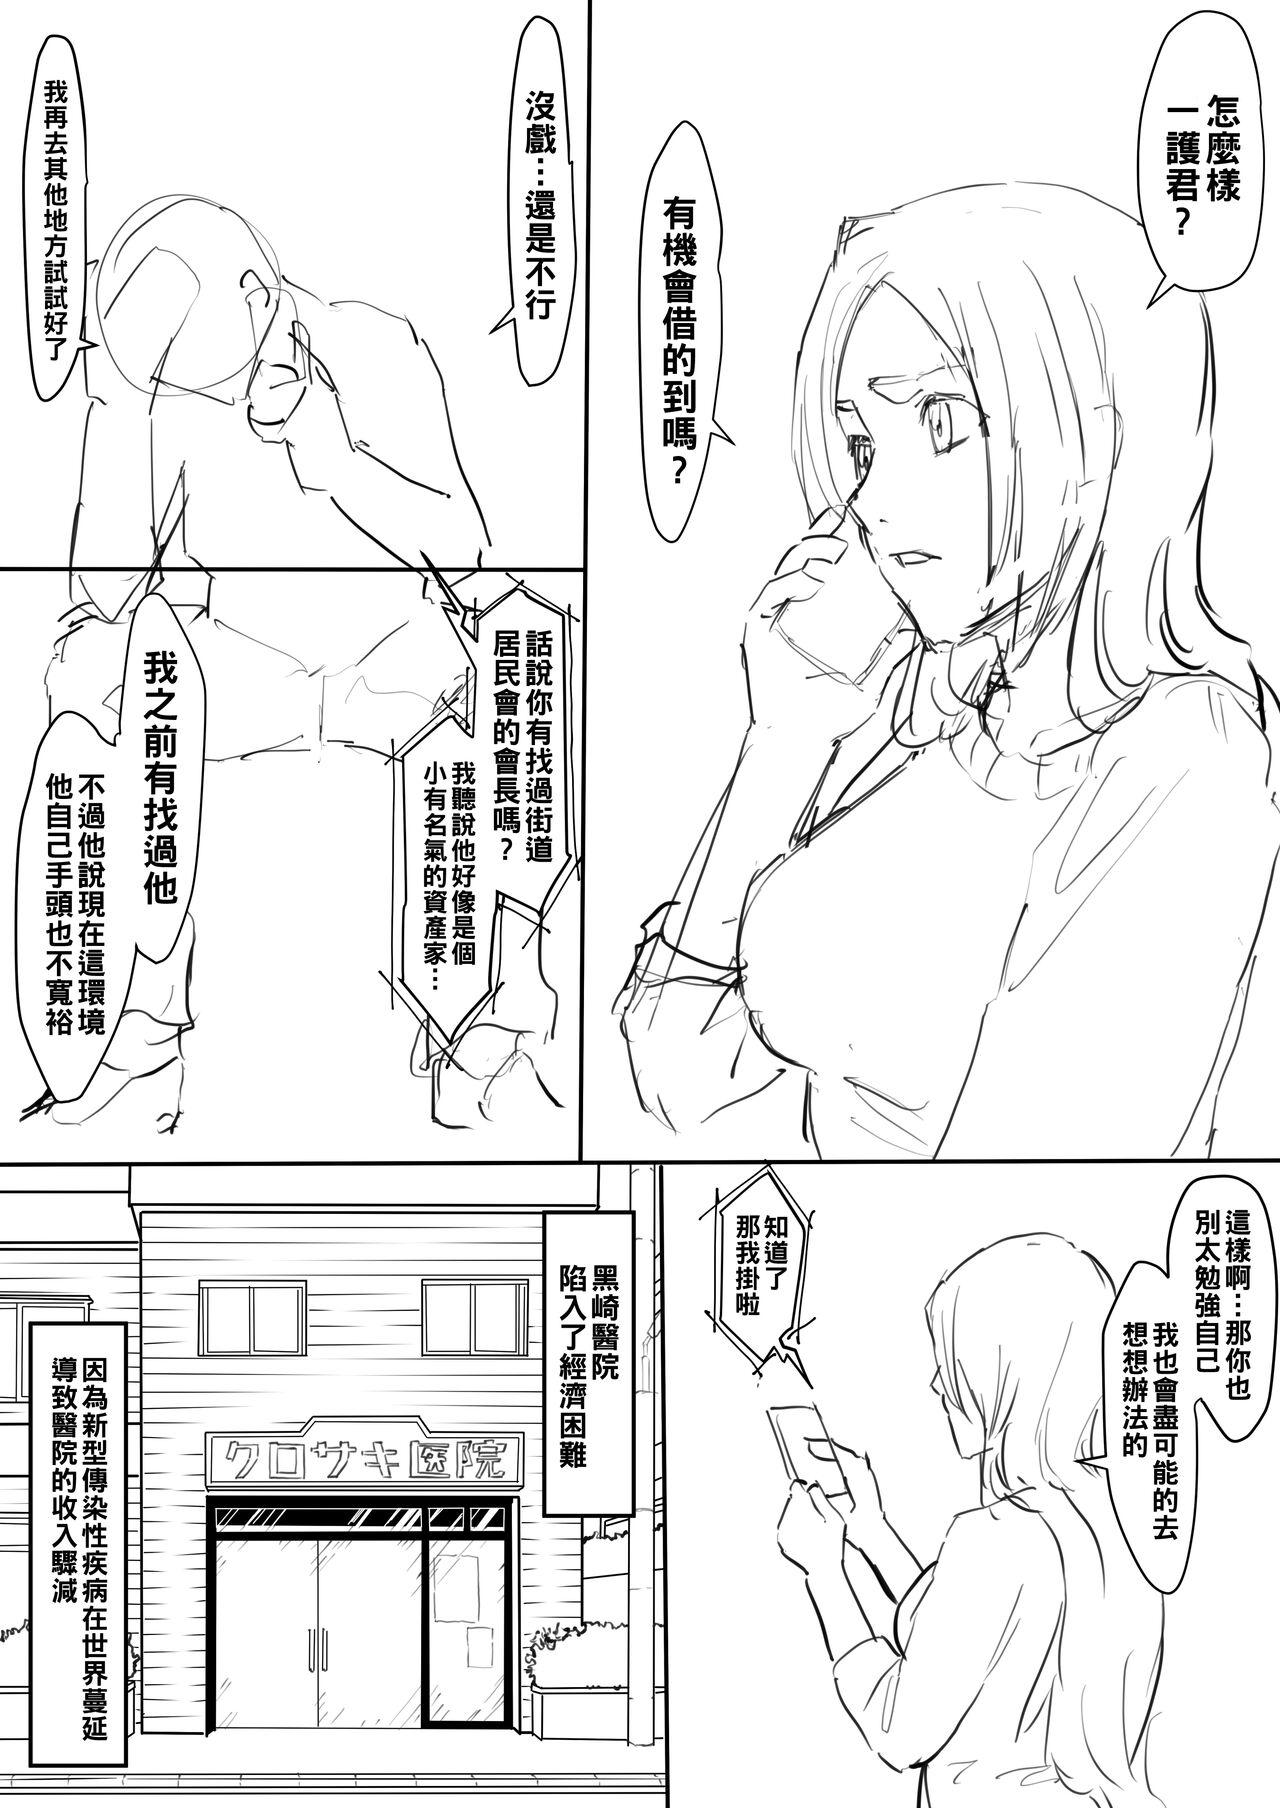 Delicia Orihime Manga - Bleach Fodendo - Picture 1